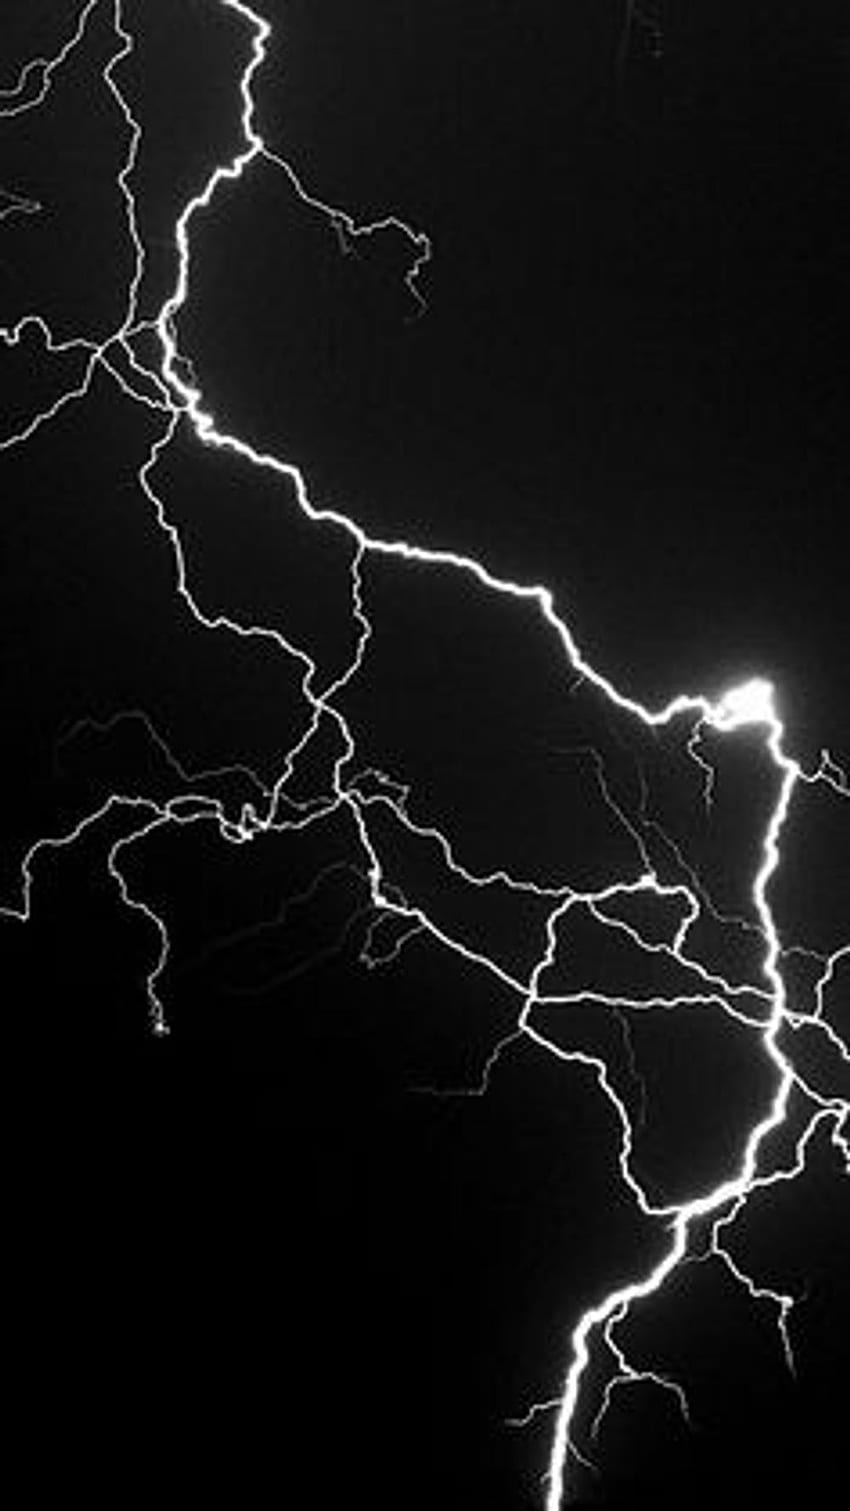 500 Lightning Images  Download Free Images on Unsplash